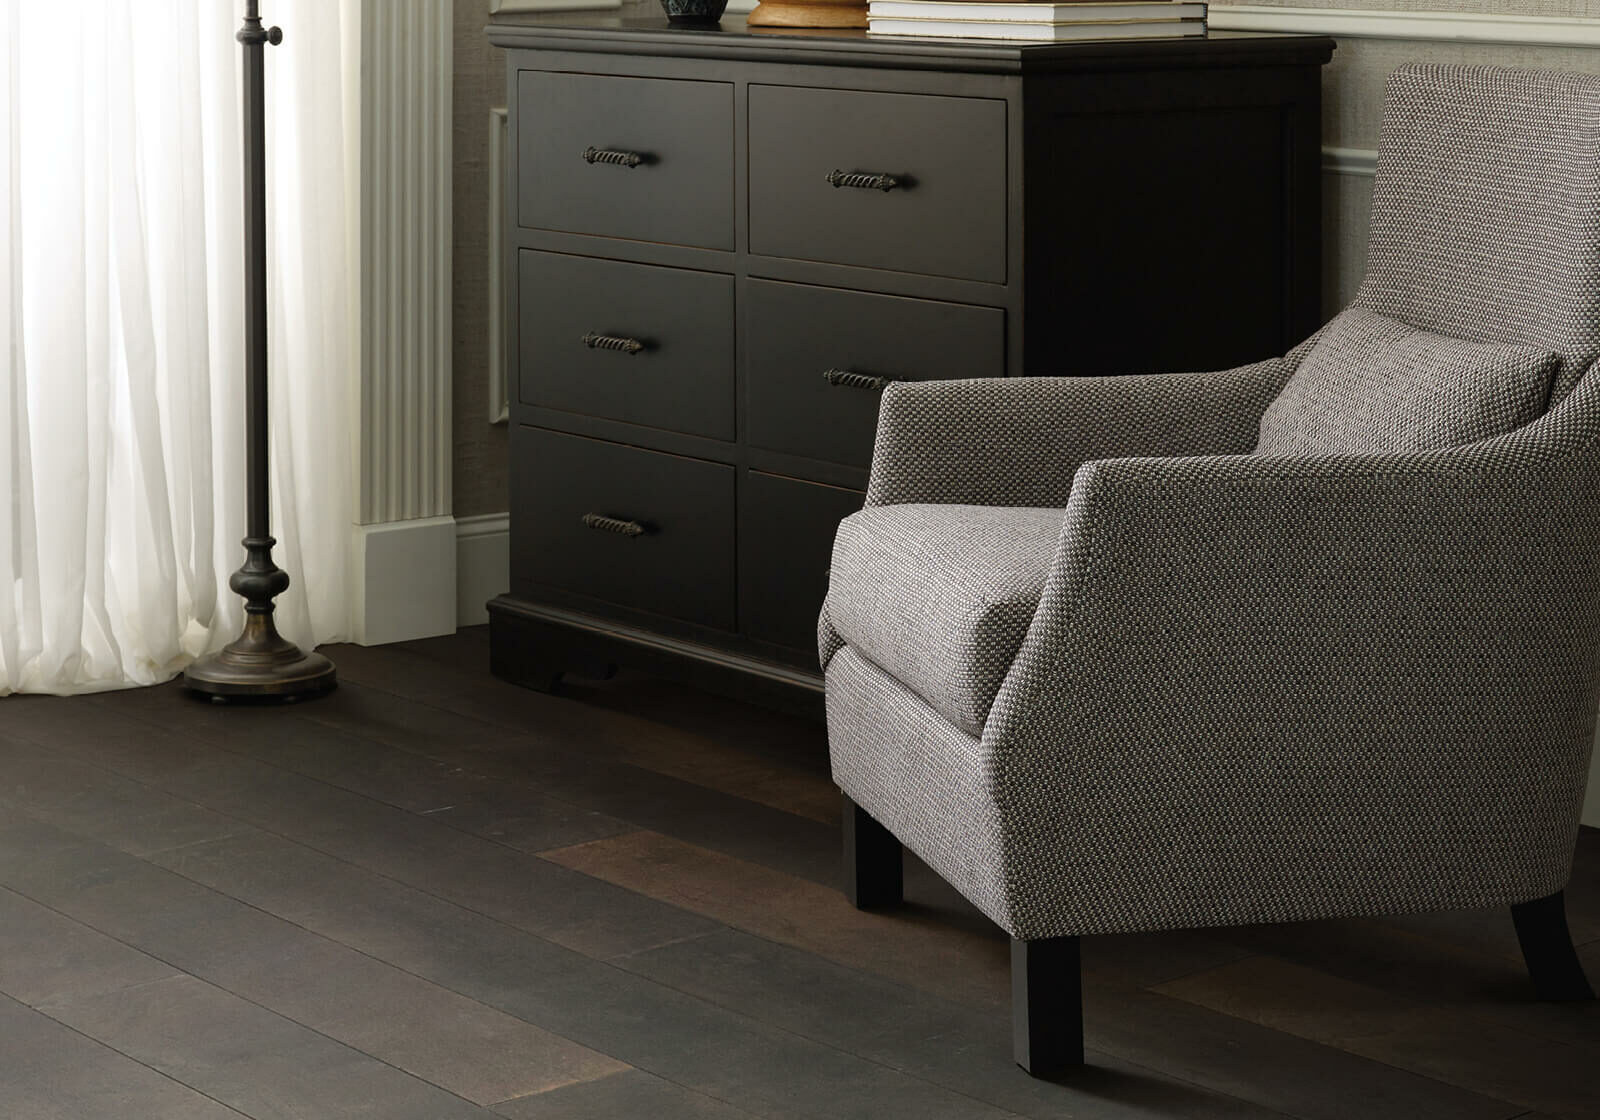 Chair on hardwood floor | Carpetland USA